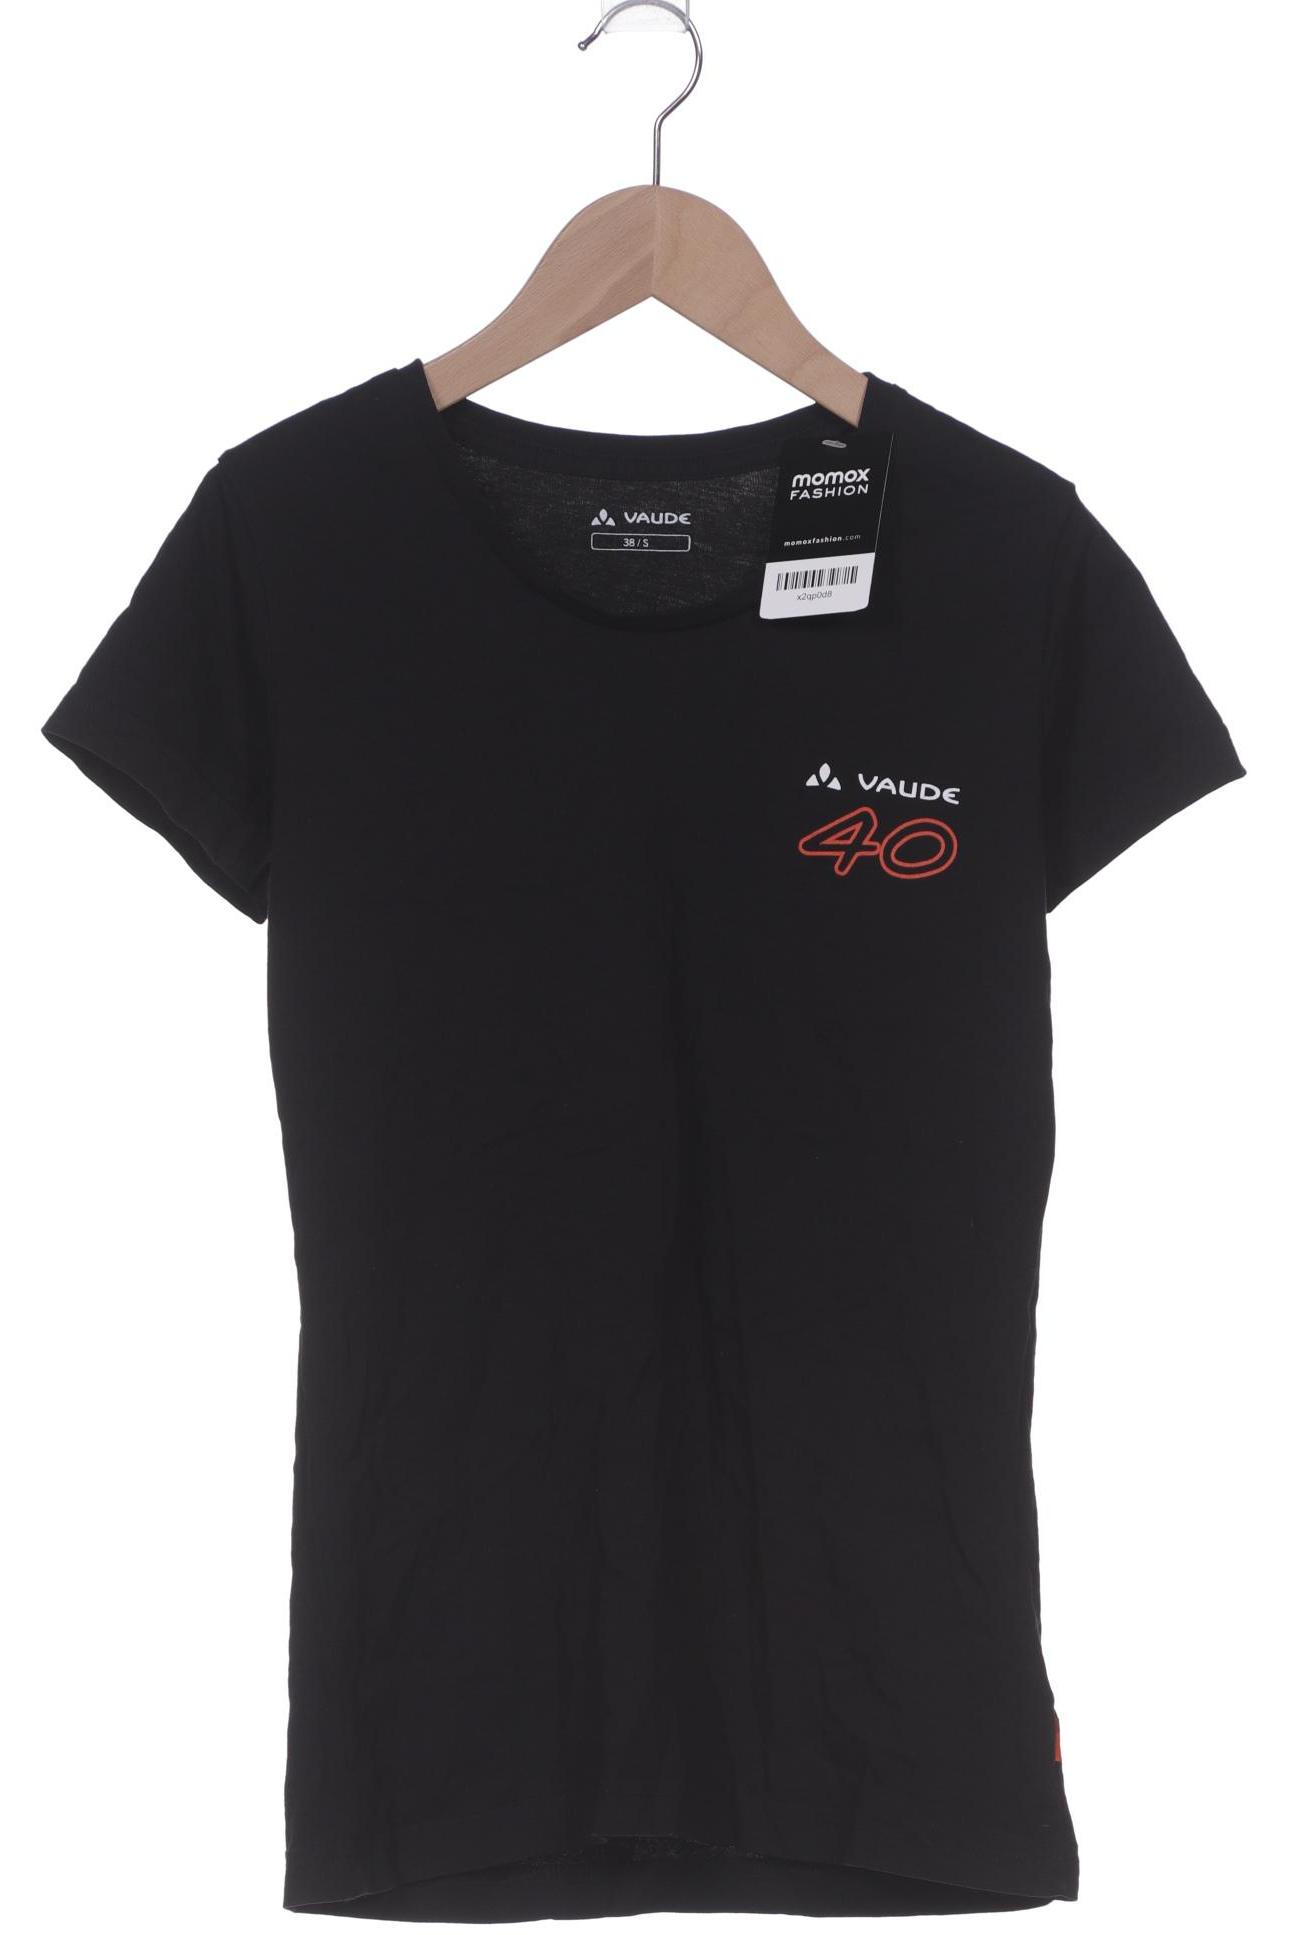 Vaude Damen T-Shirt, schwarz, Gr. 38 von Vaude